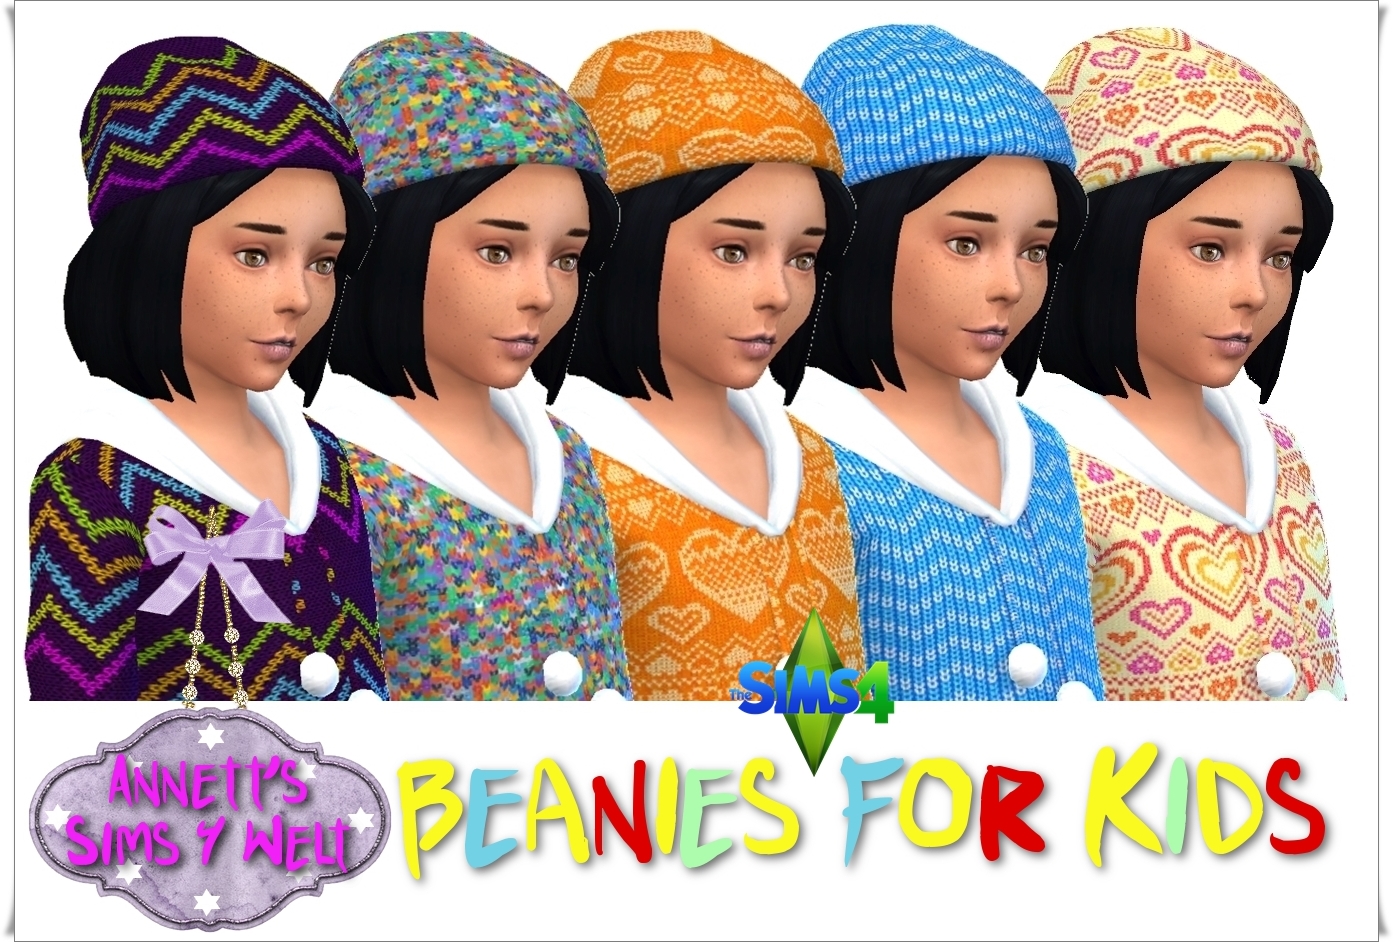 Annett's Sims 4 Welt: Beanie for Kids.